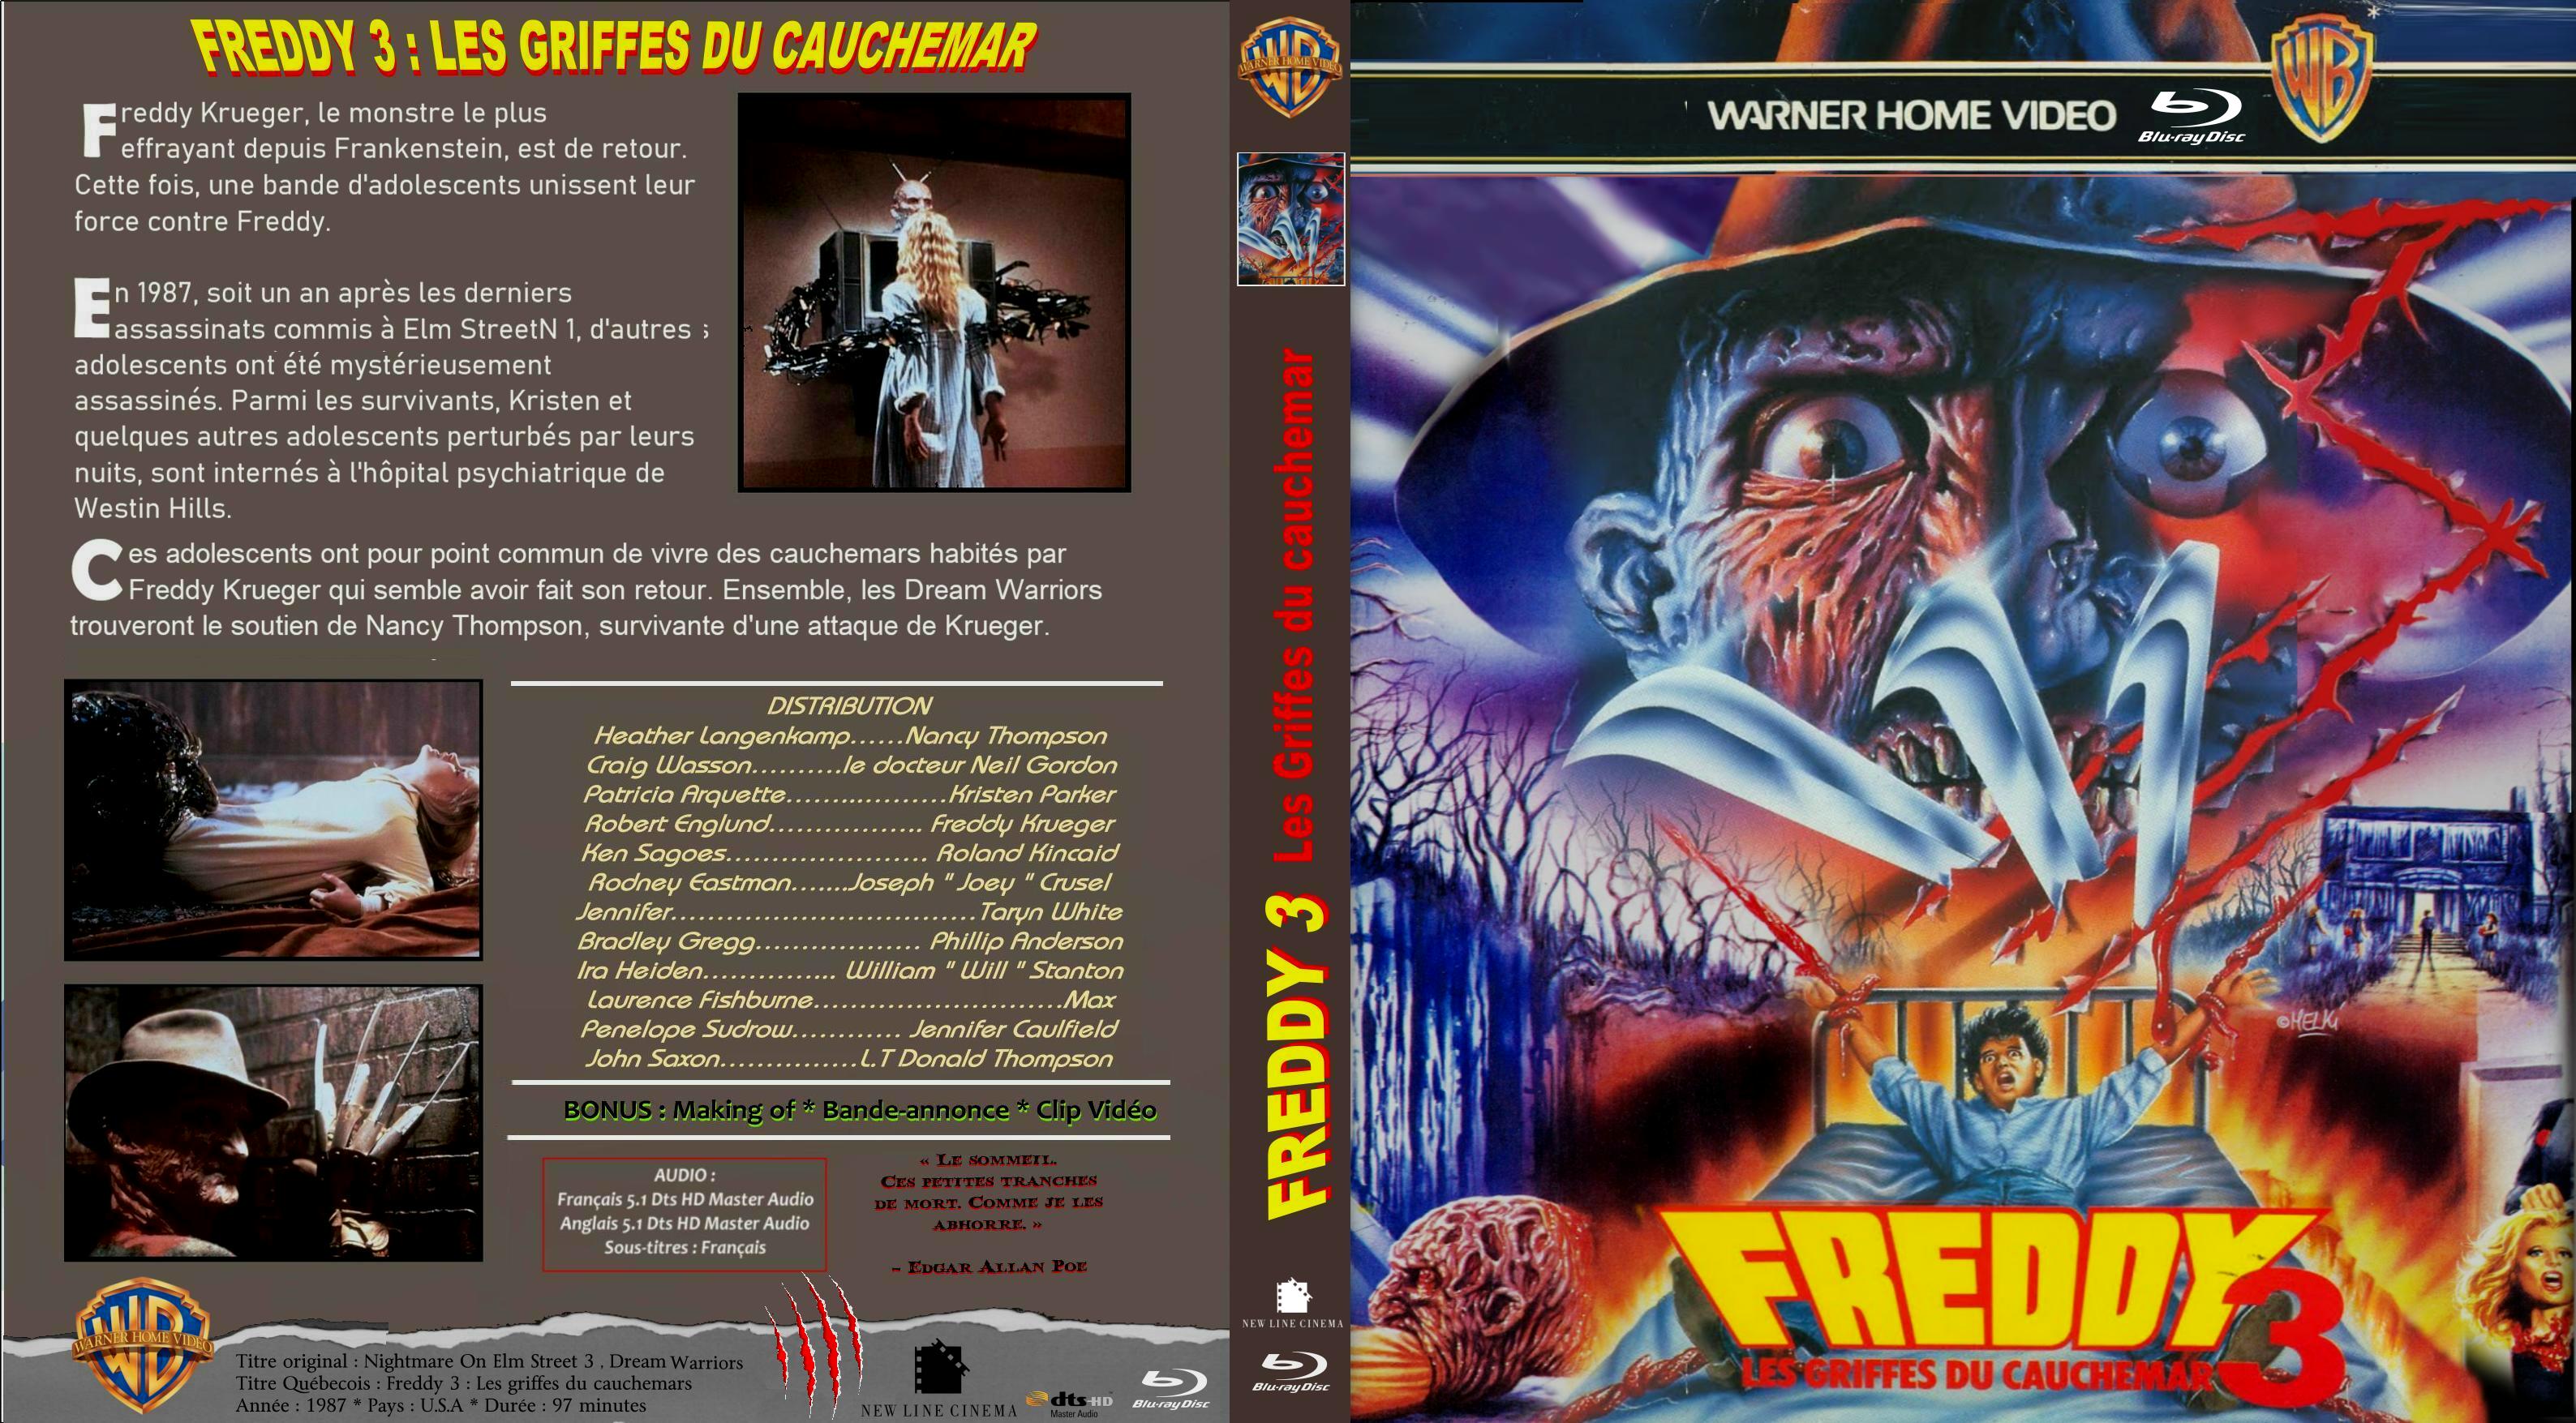 Jaquette DVD Freddy 3 - Les griffes du cauchemar custom (BLU-RAY)